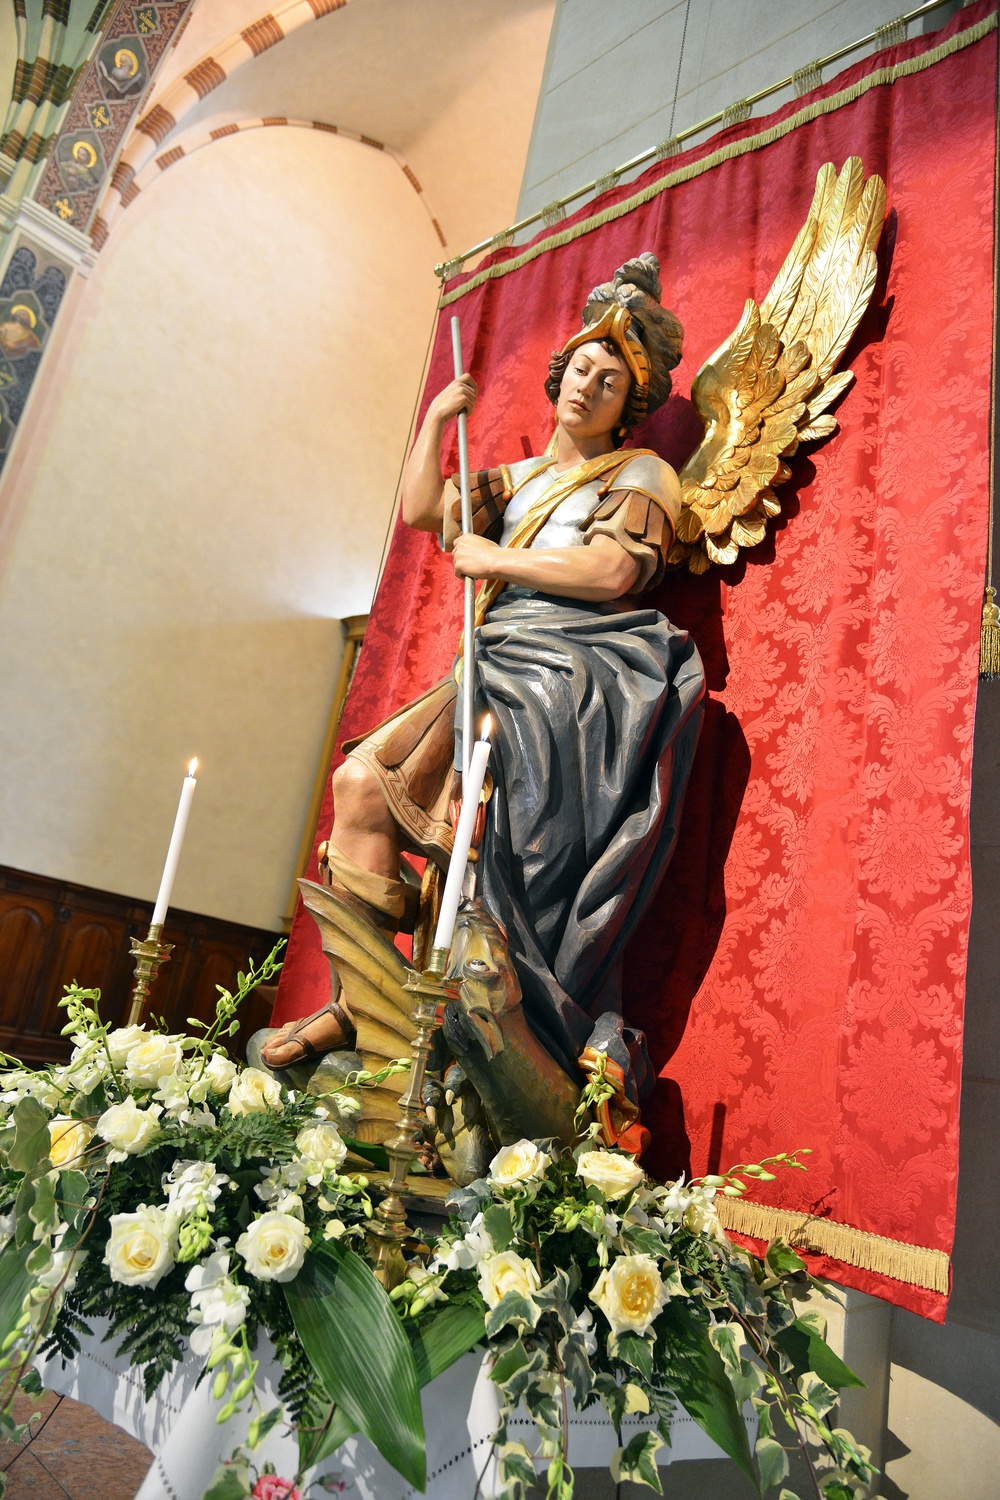 Saint Michael's Ceremony